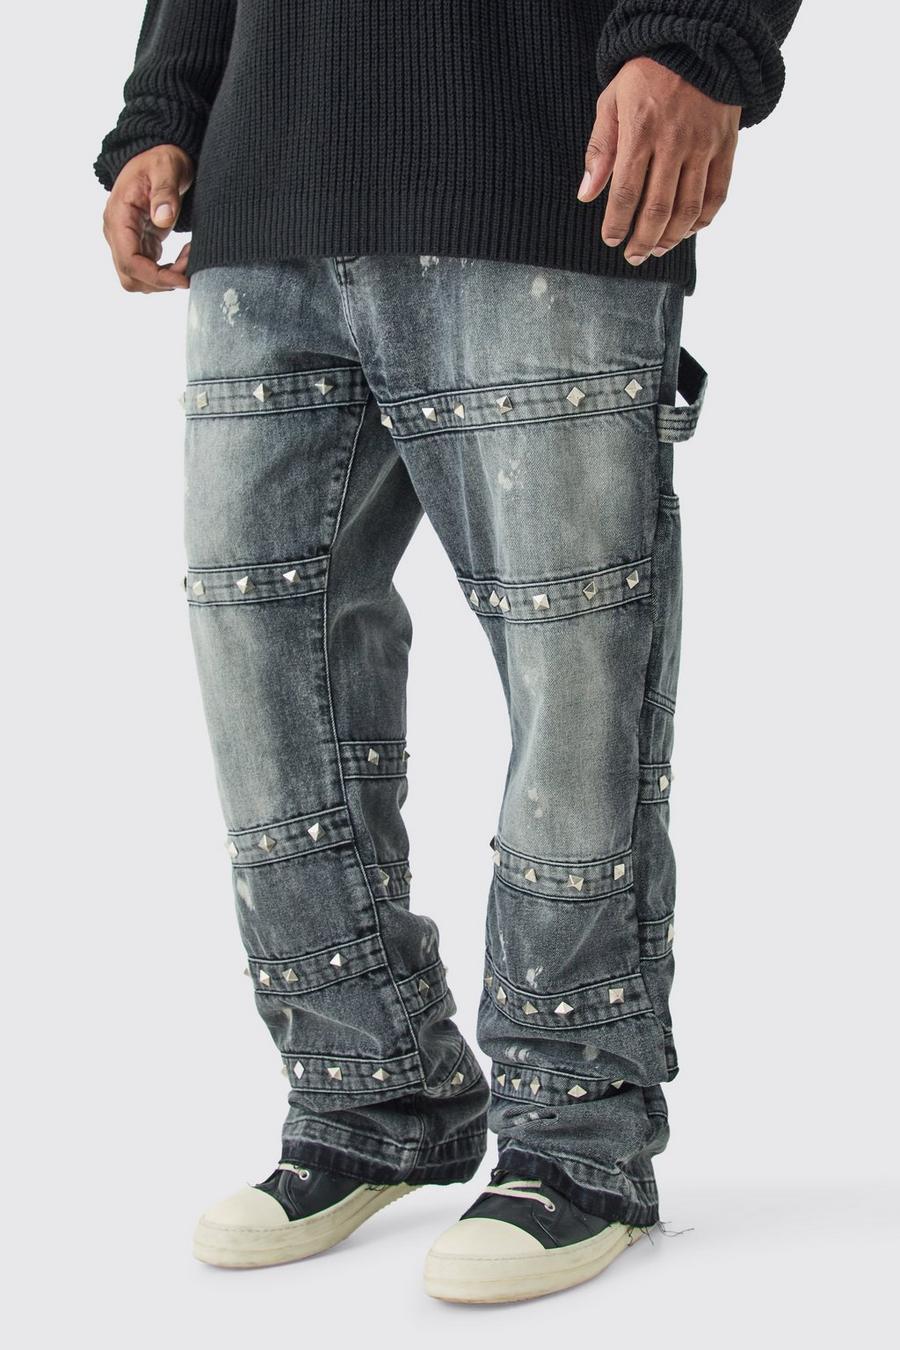 Jeans Plus Size Slim Fit in denim rigido con spalline decorate e dettagli a zampa, Charcoal